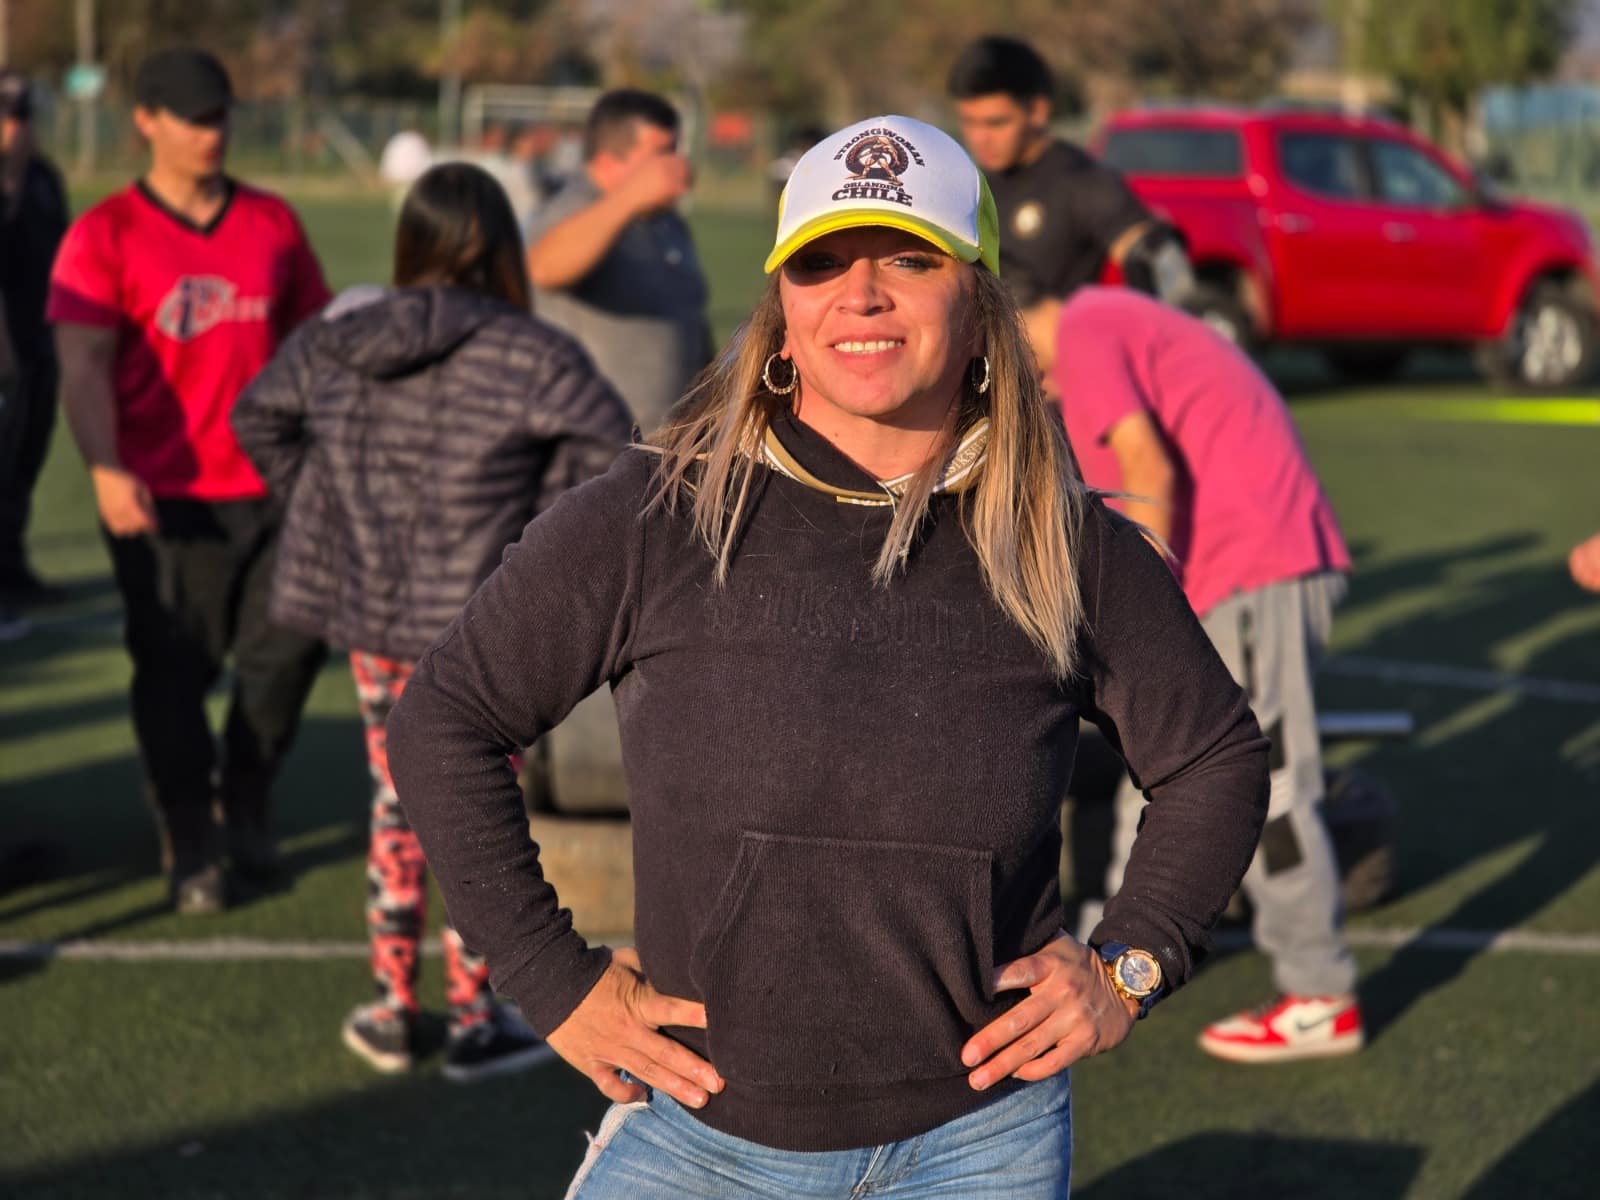 La Mujer Más Fuerte de Chile: Floridana Que Movió un Camión de 17 Toneladas Competirá en el Nuevo Mundial de Fuerza Extrema